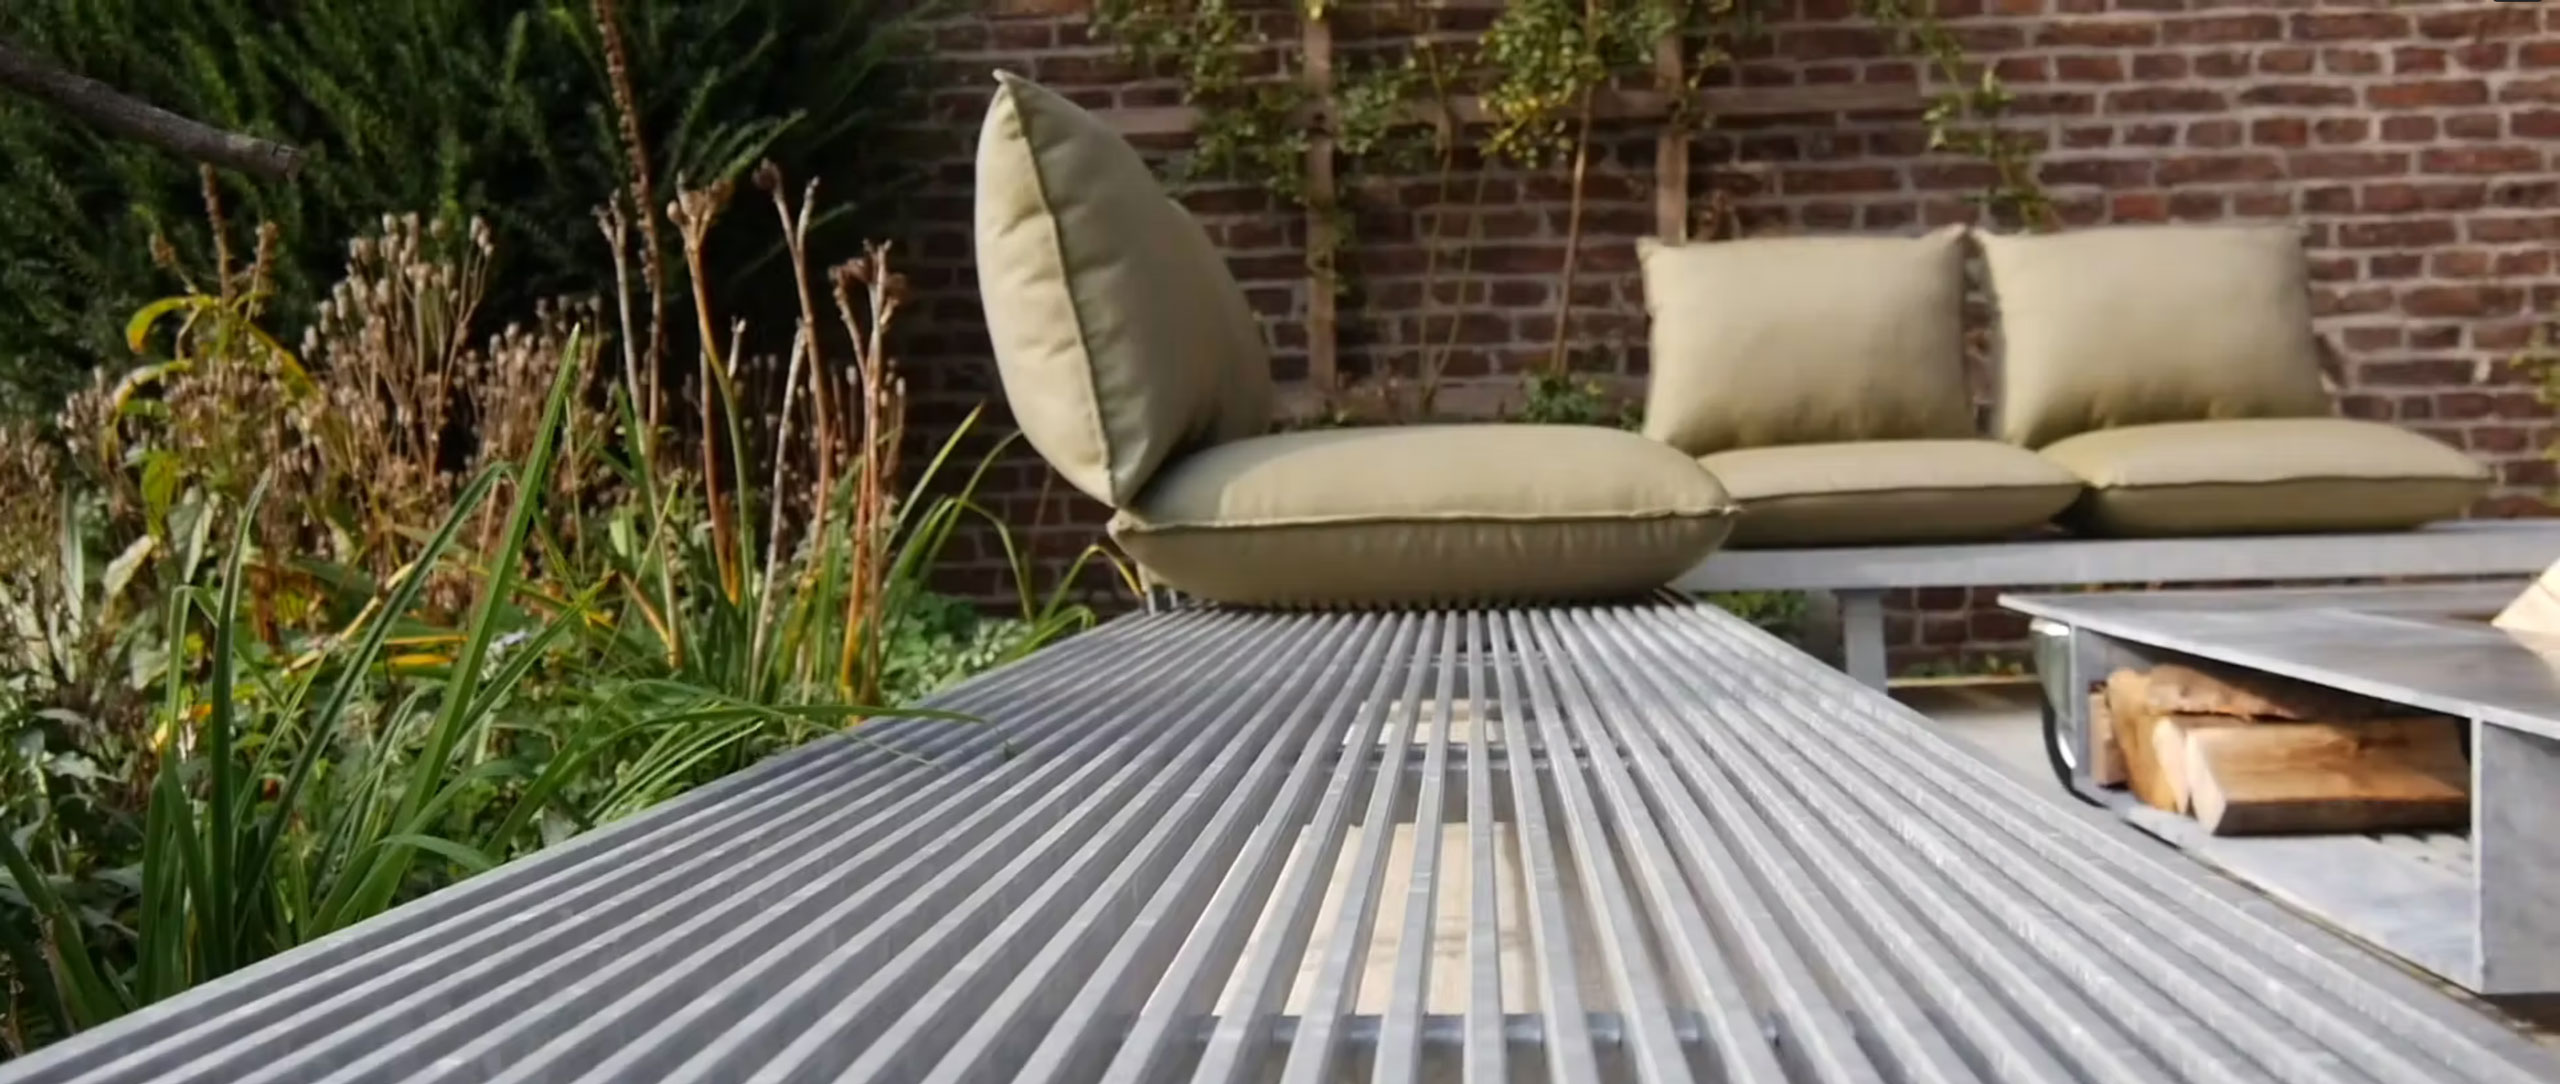 Titelbild des Videos zum Outdoor Sofa L01 von volkerweiss